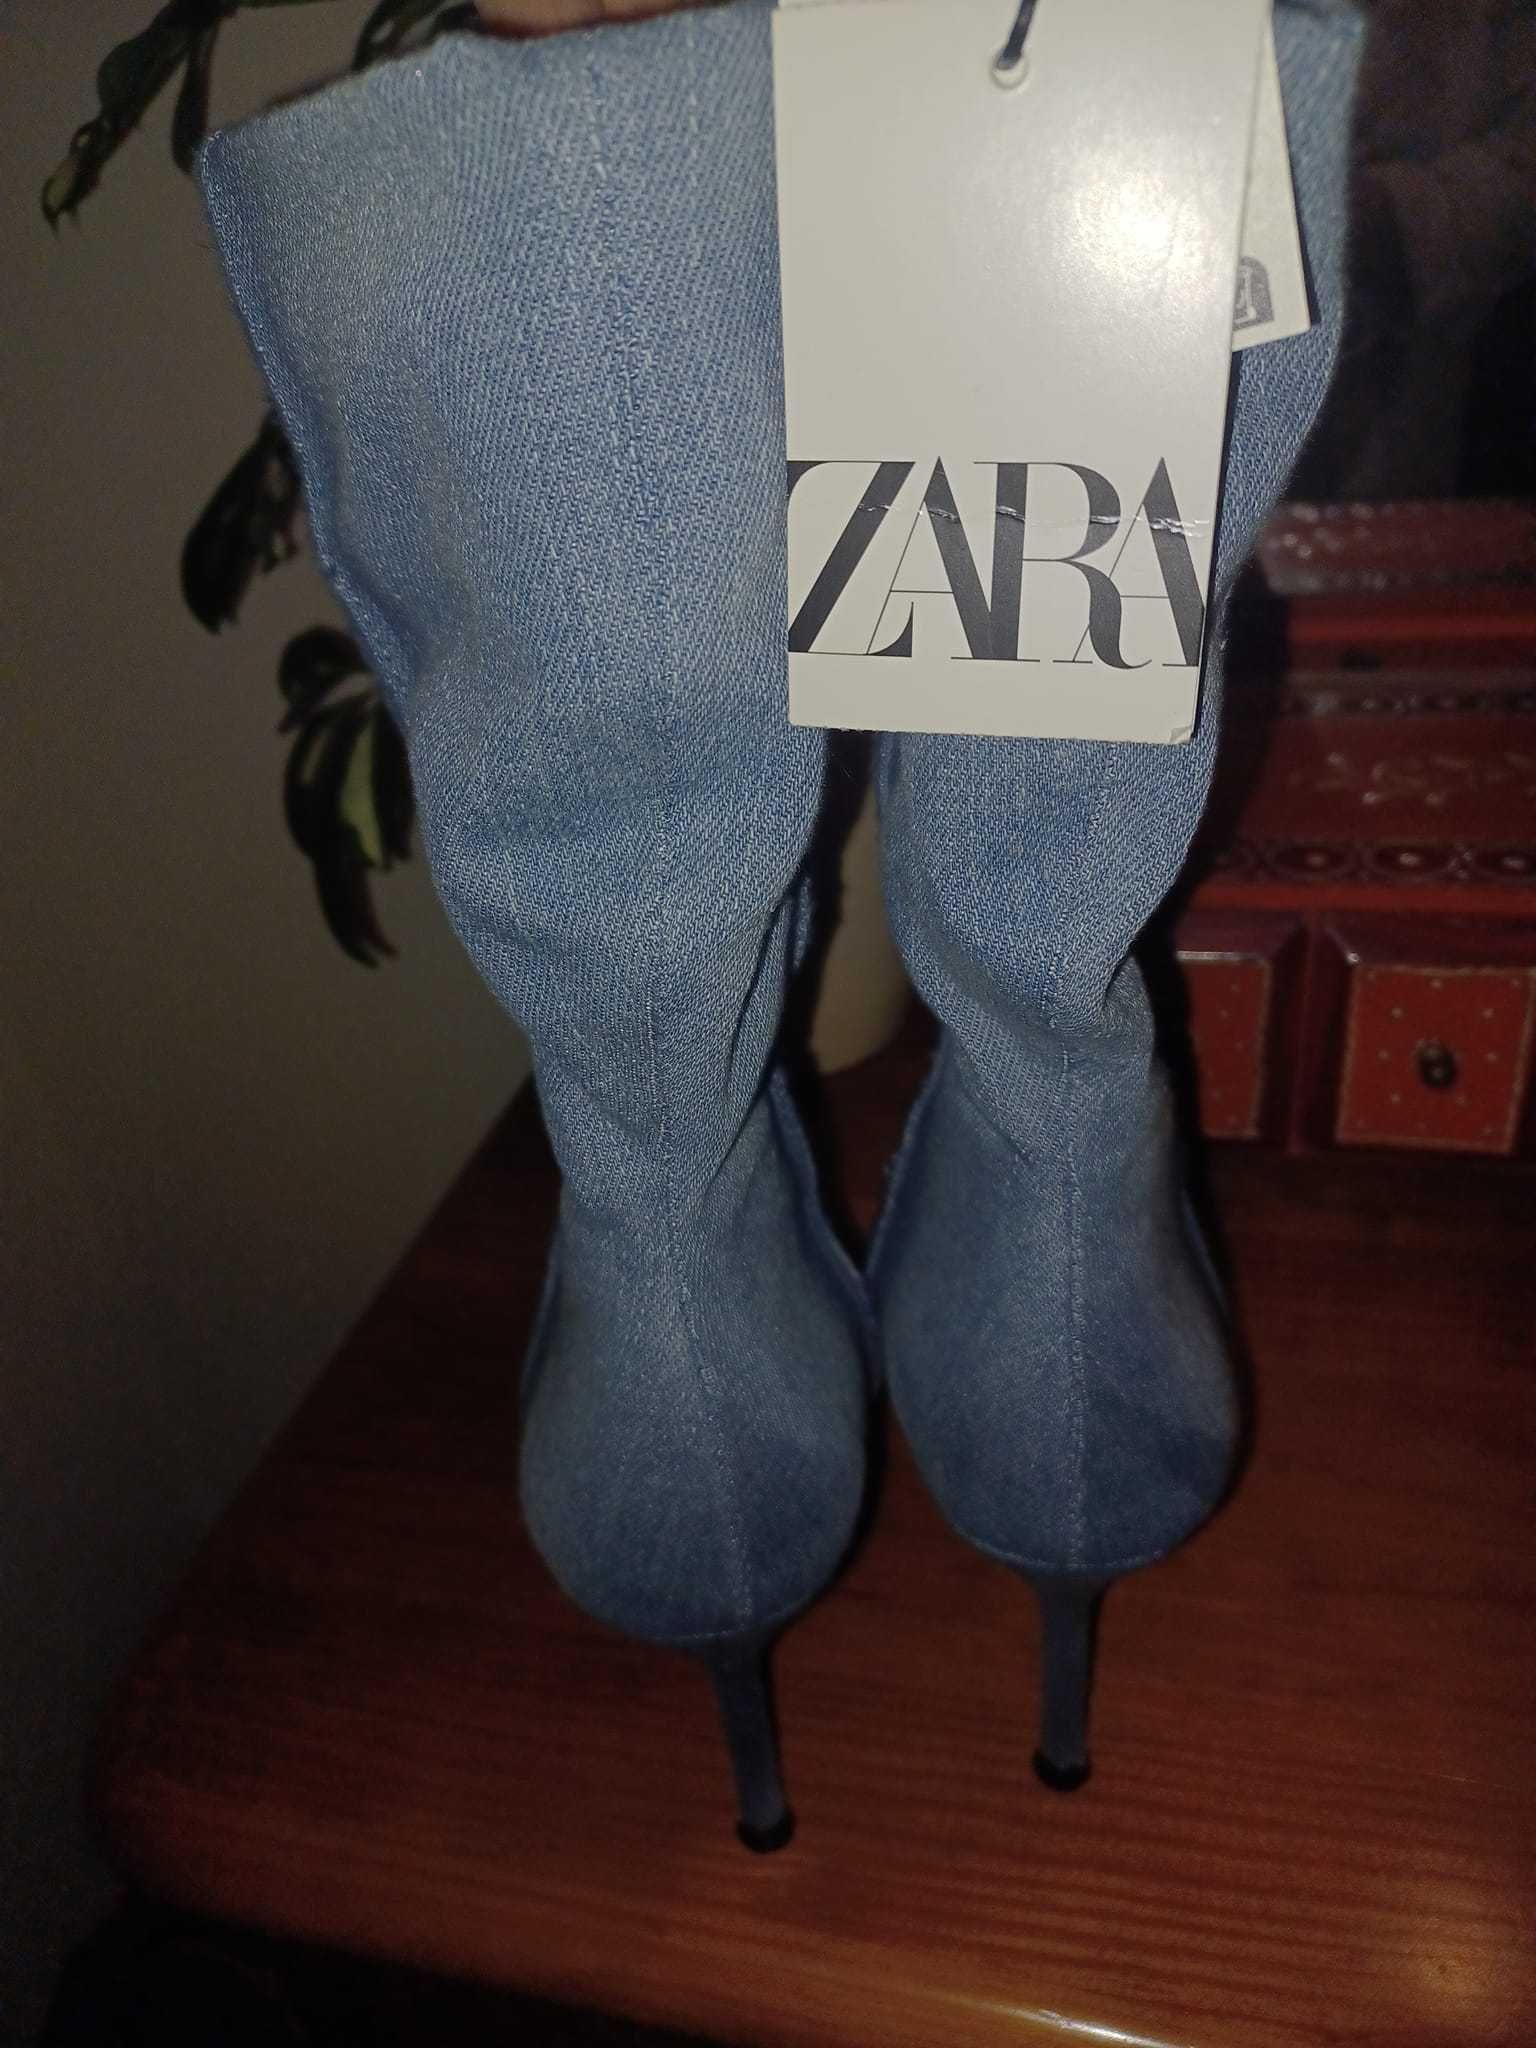 Botas em ganga da Zara novas com etiqueta